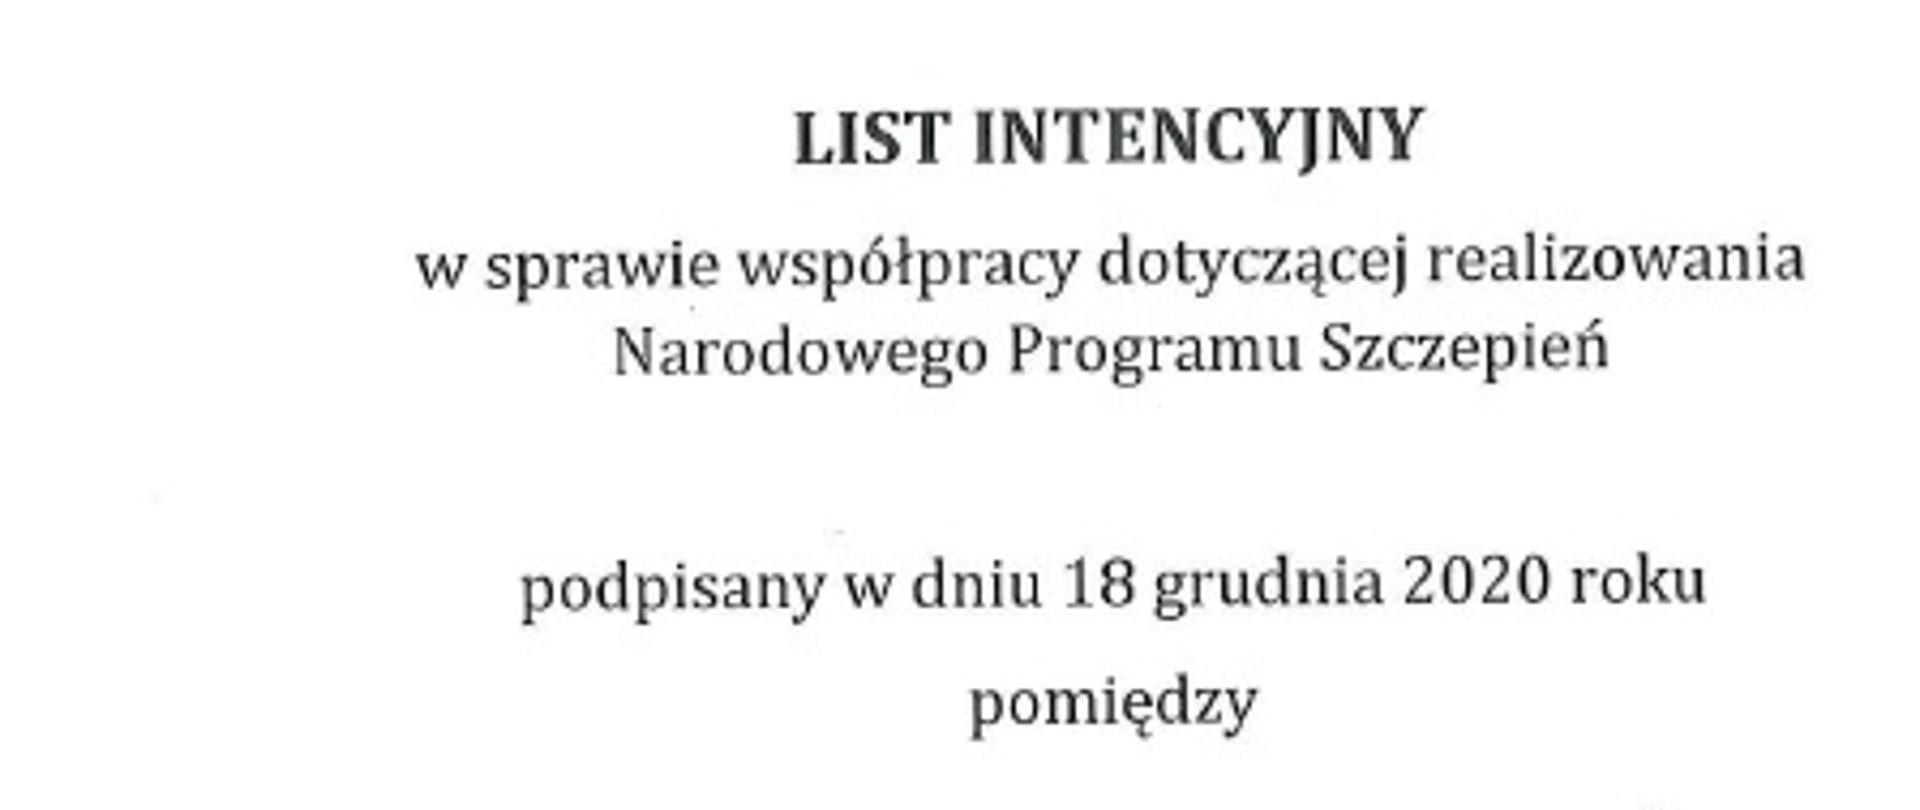 List Intencyjny ws. Narodowego Programu Szczepień